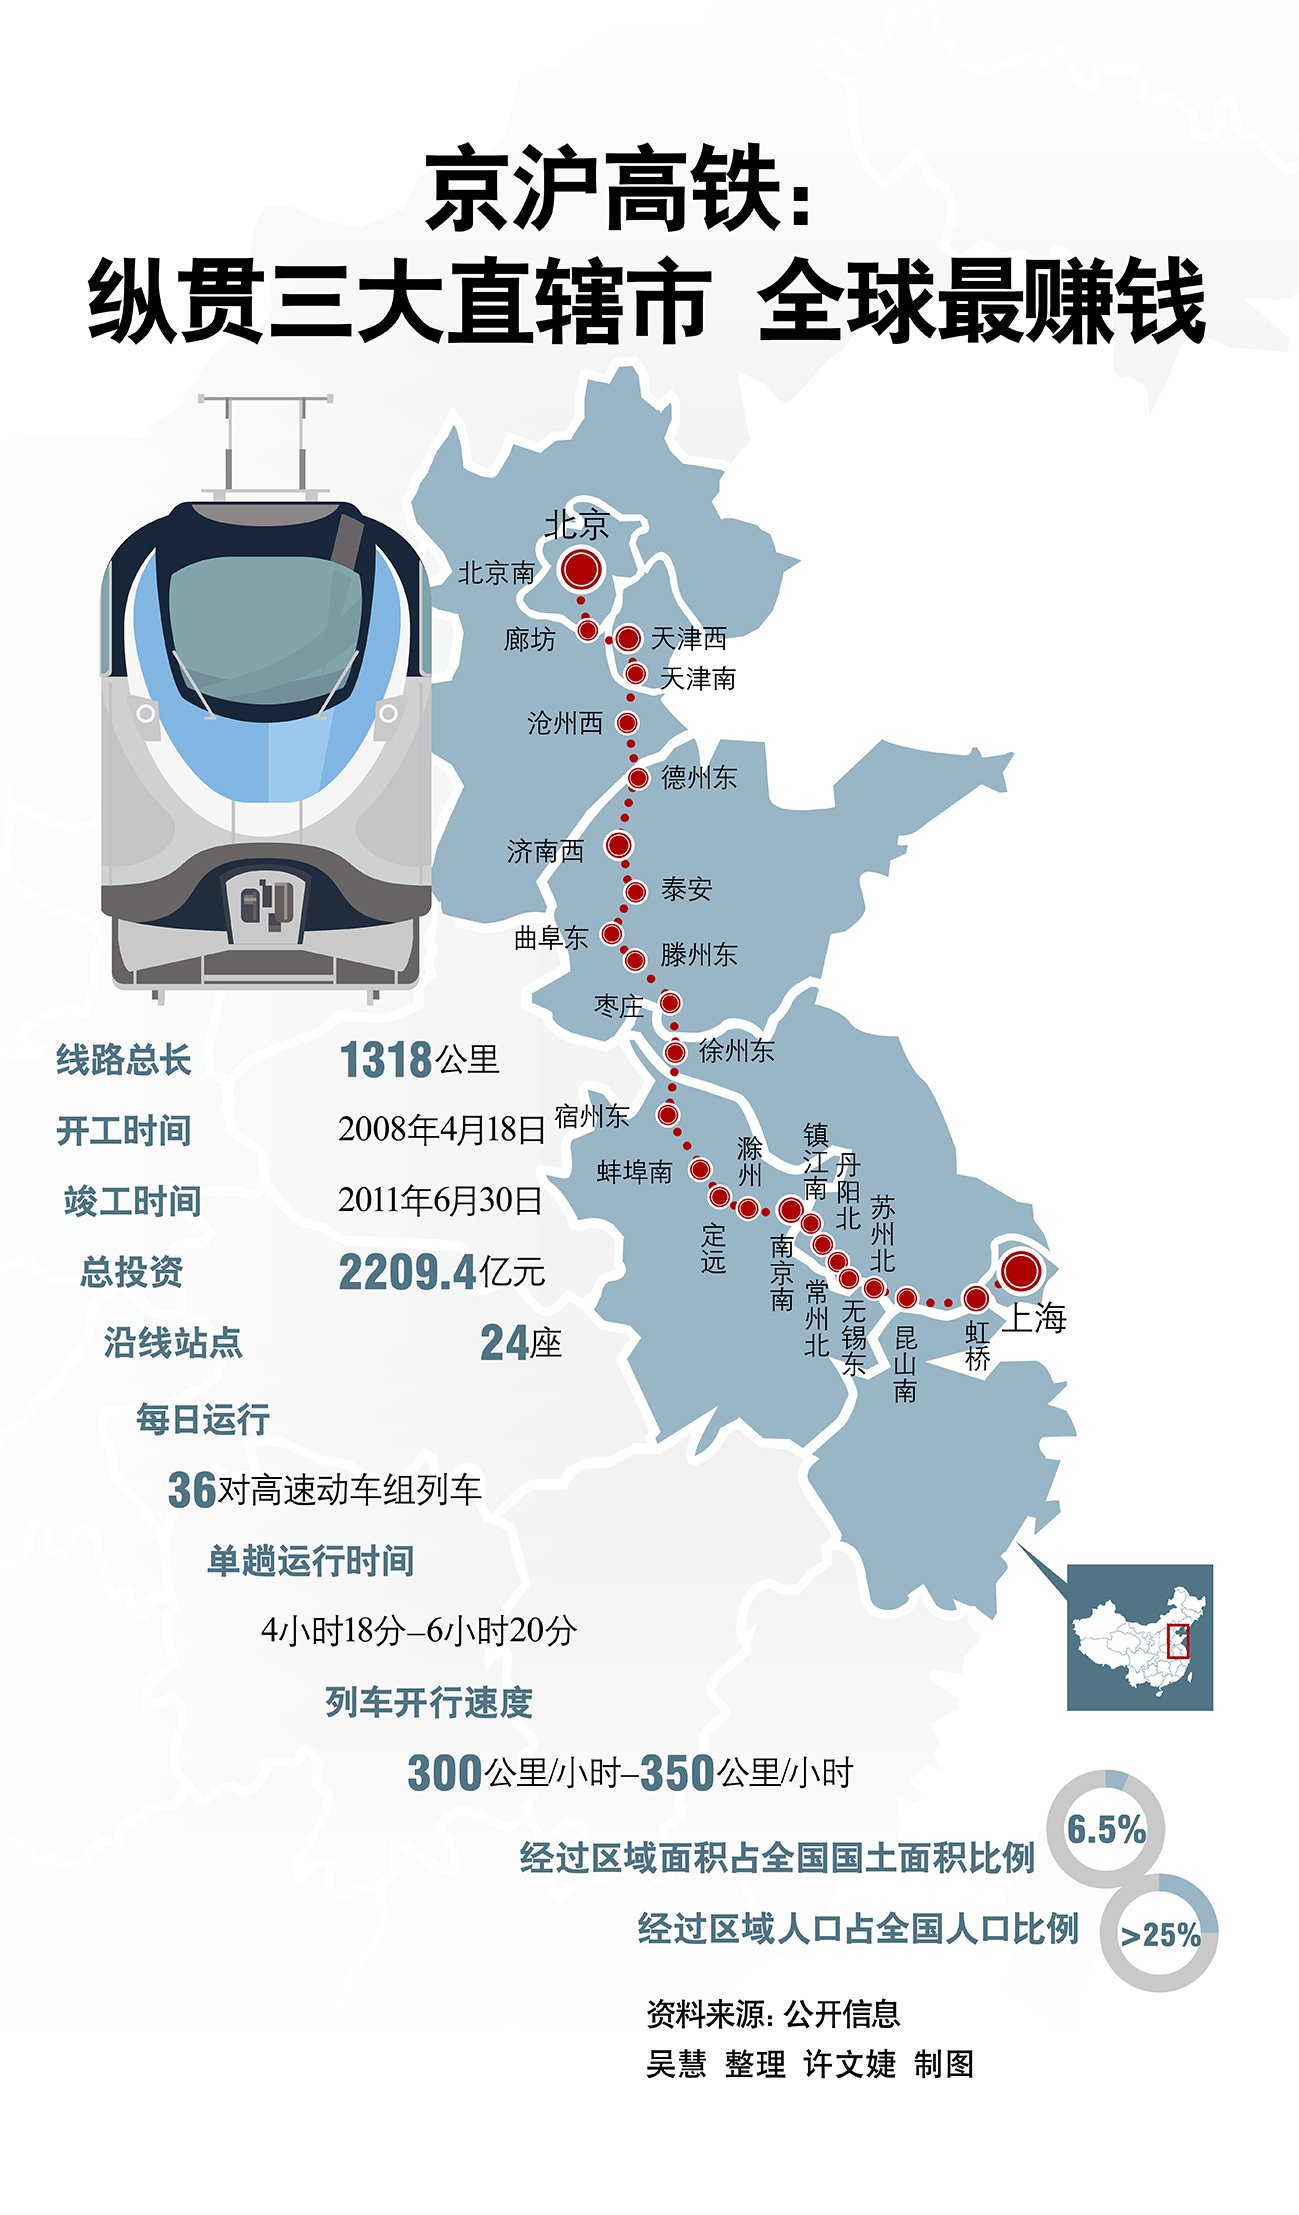 京沪高铁路线、京沪高铁路线路图